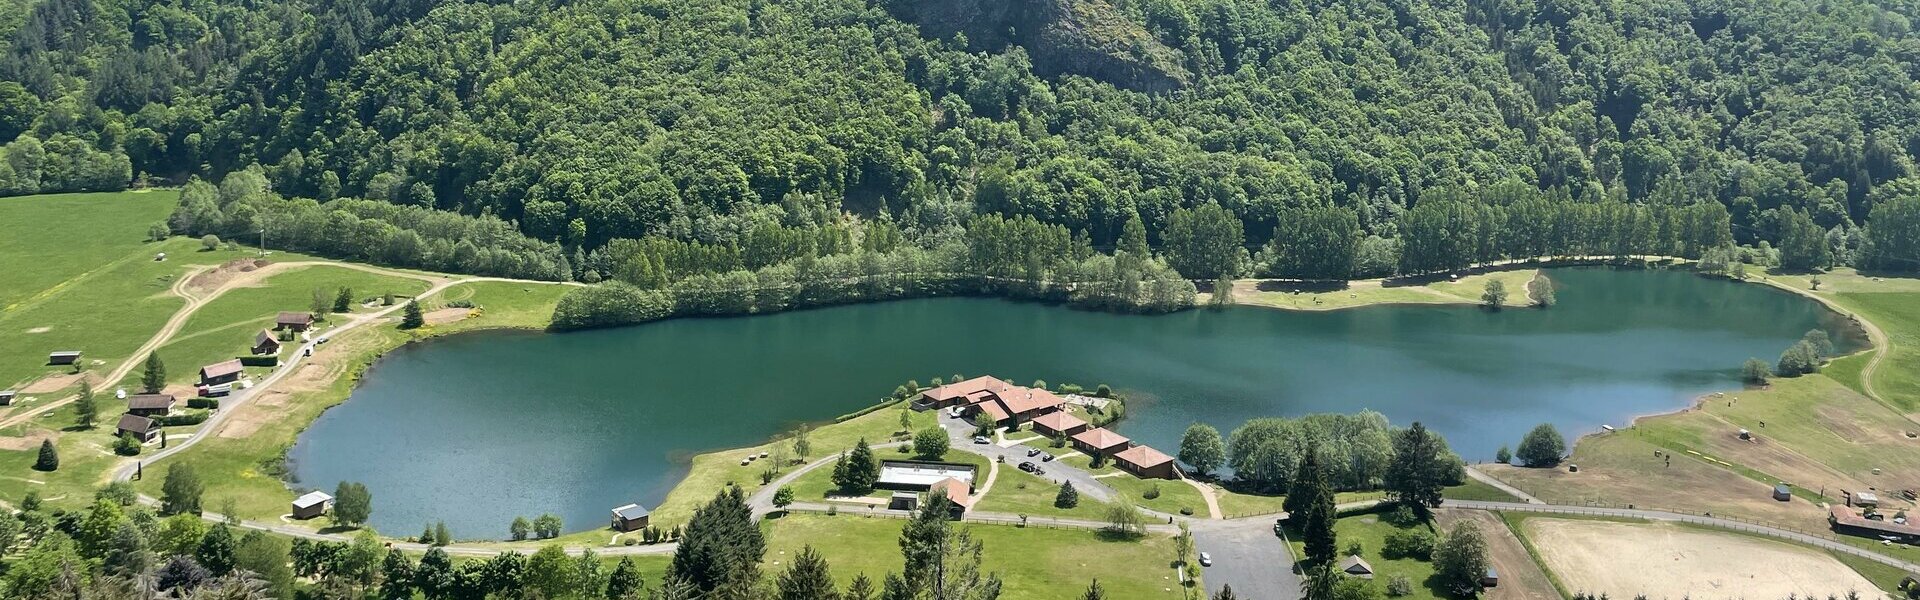 Galerie de photos .Le Lac des Graves en Auvergne - Cantal : Hôtel, restaurant, multi activités...